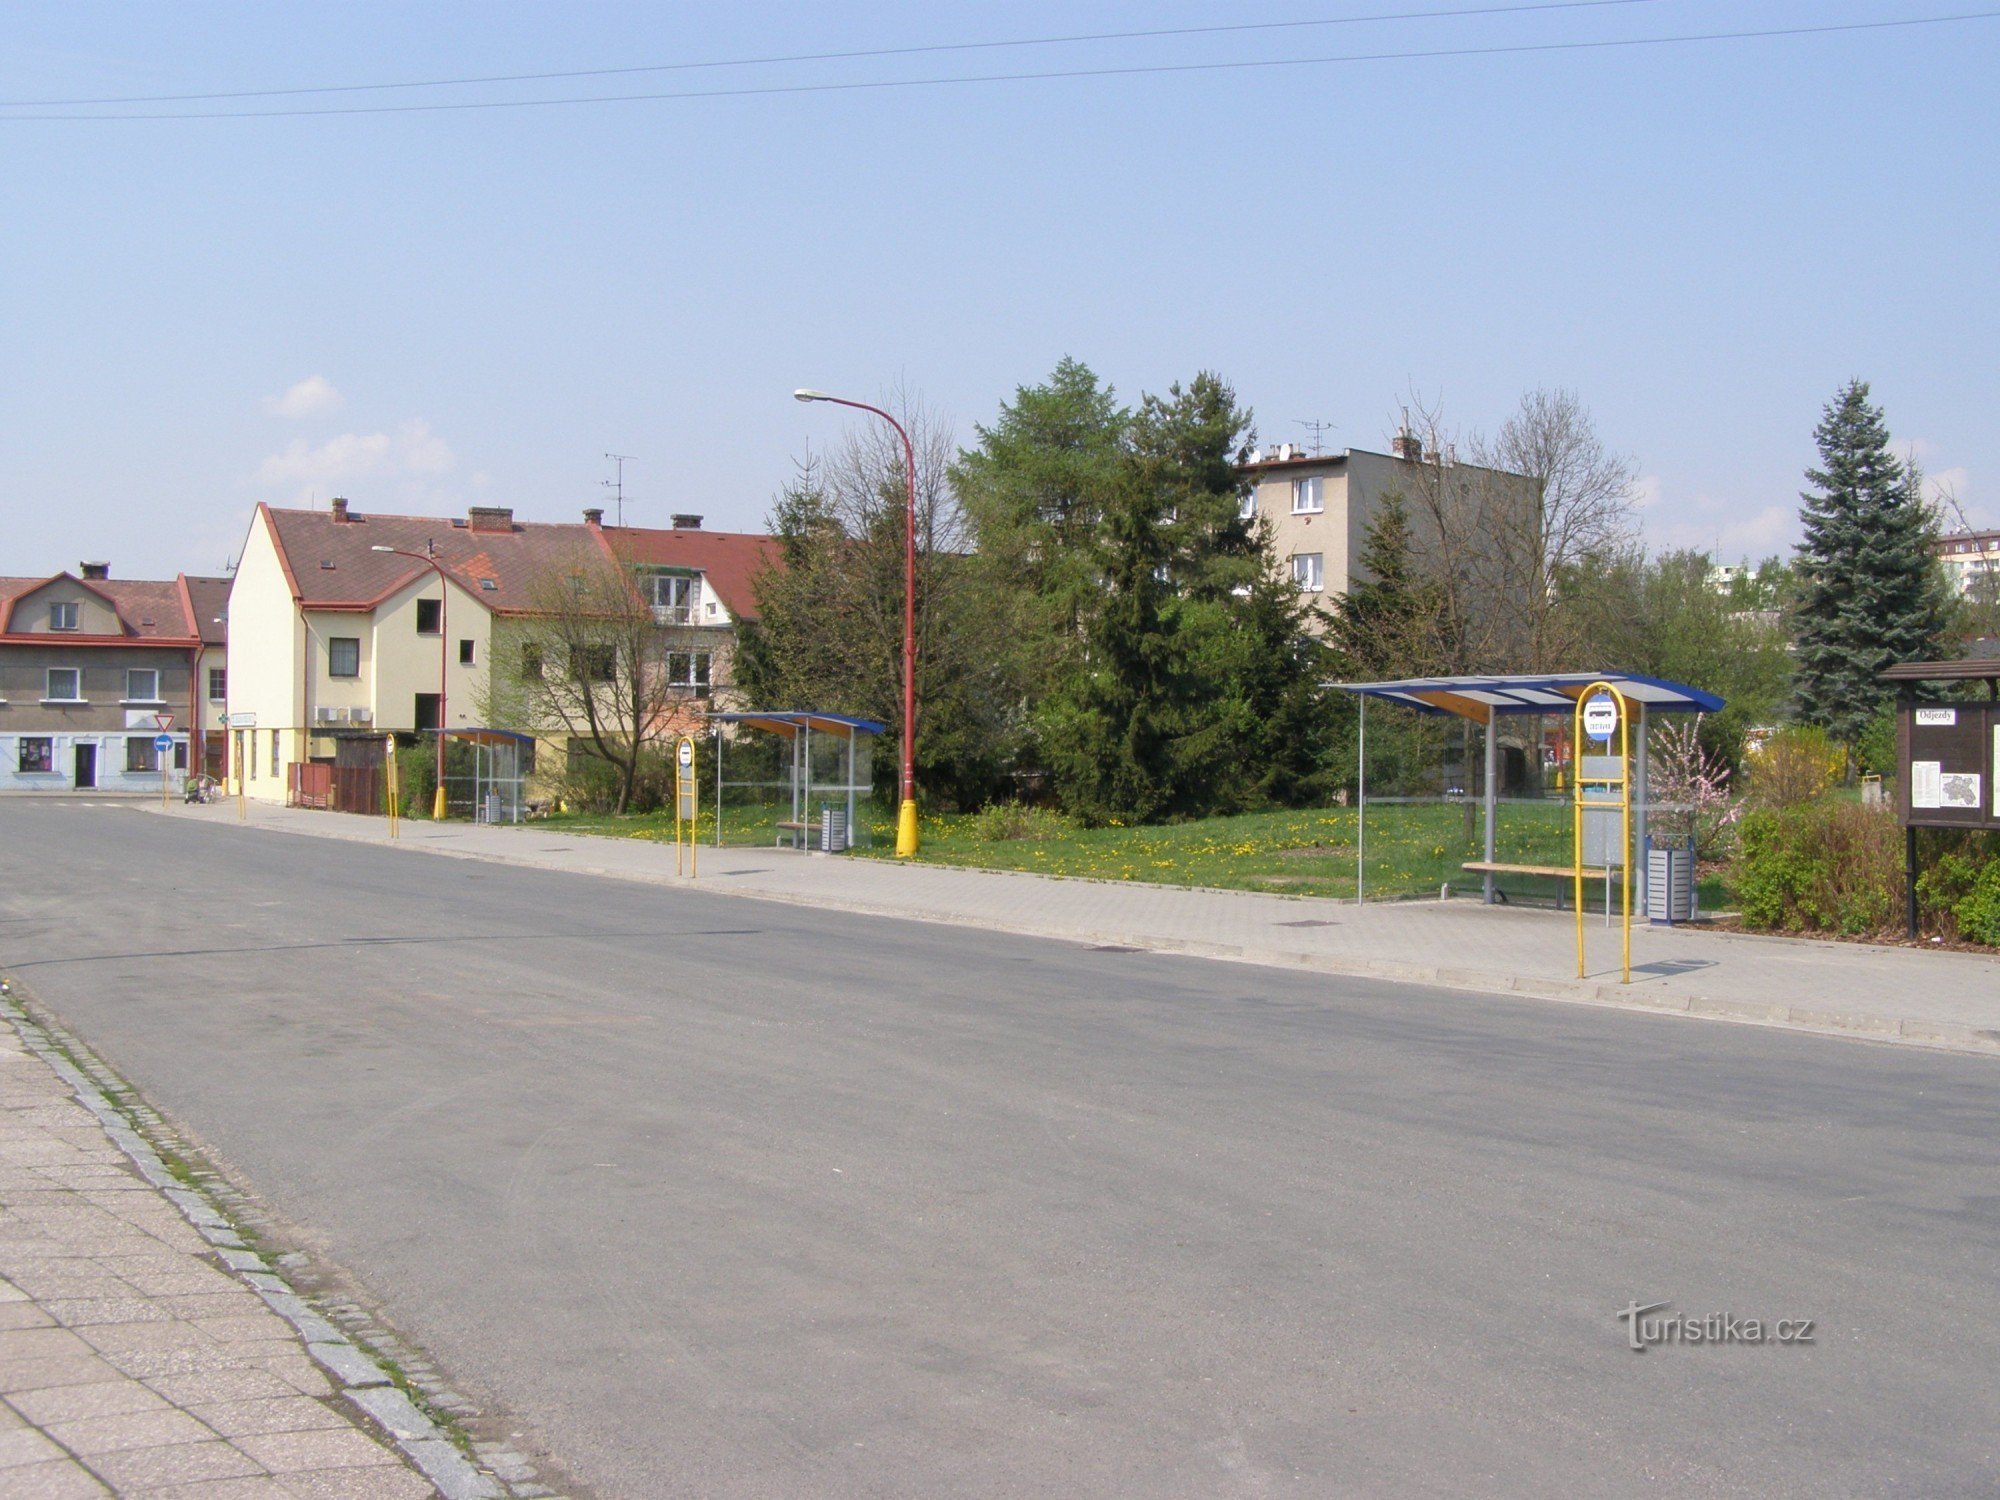 Červený Kostelec - bus station